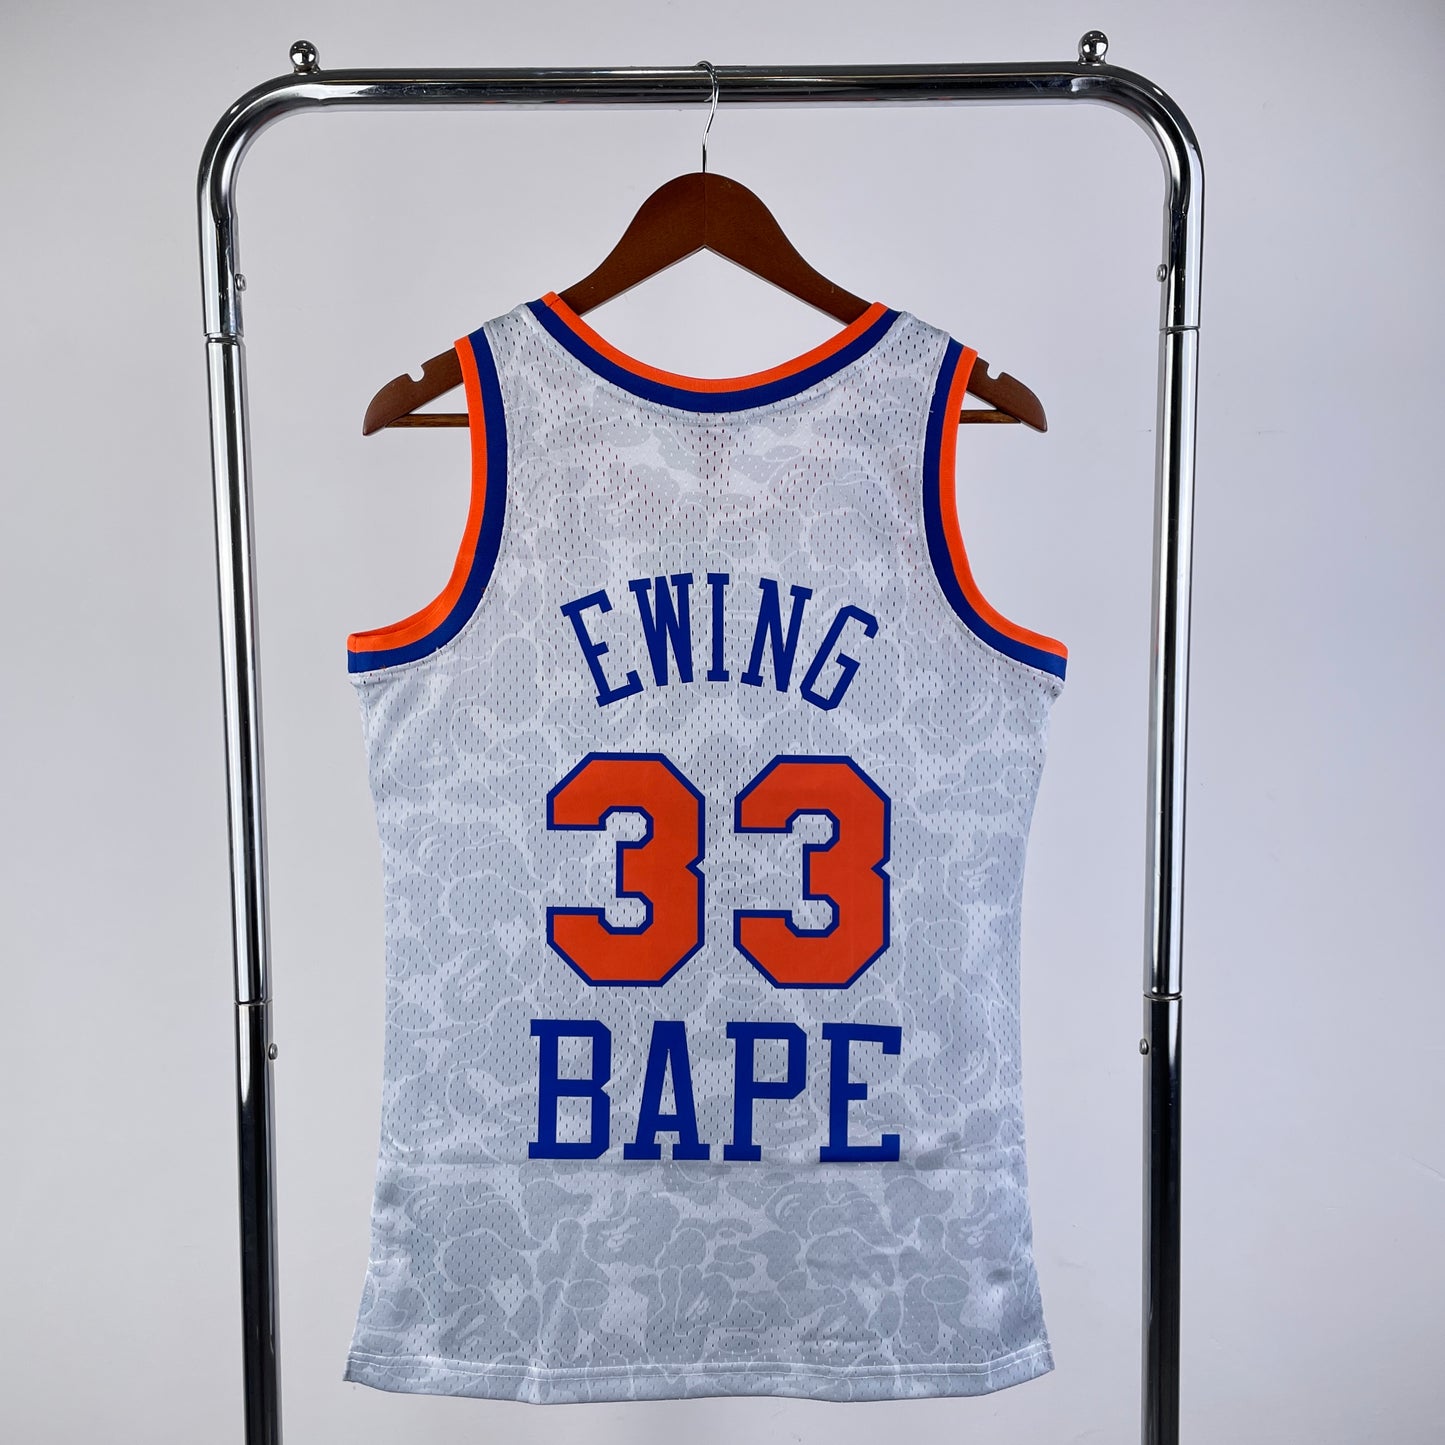 ‘A Bathing Ape’ X Patrick Ewing New York Knicks Mitchell & Ness NBA Hardwood Classic Jersey